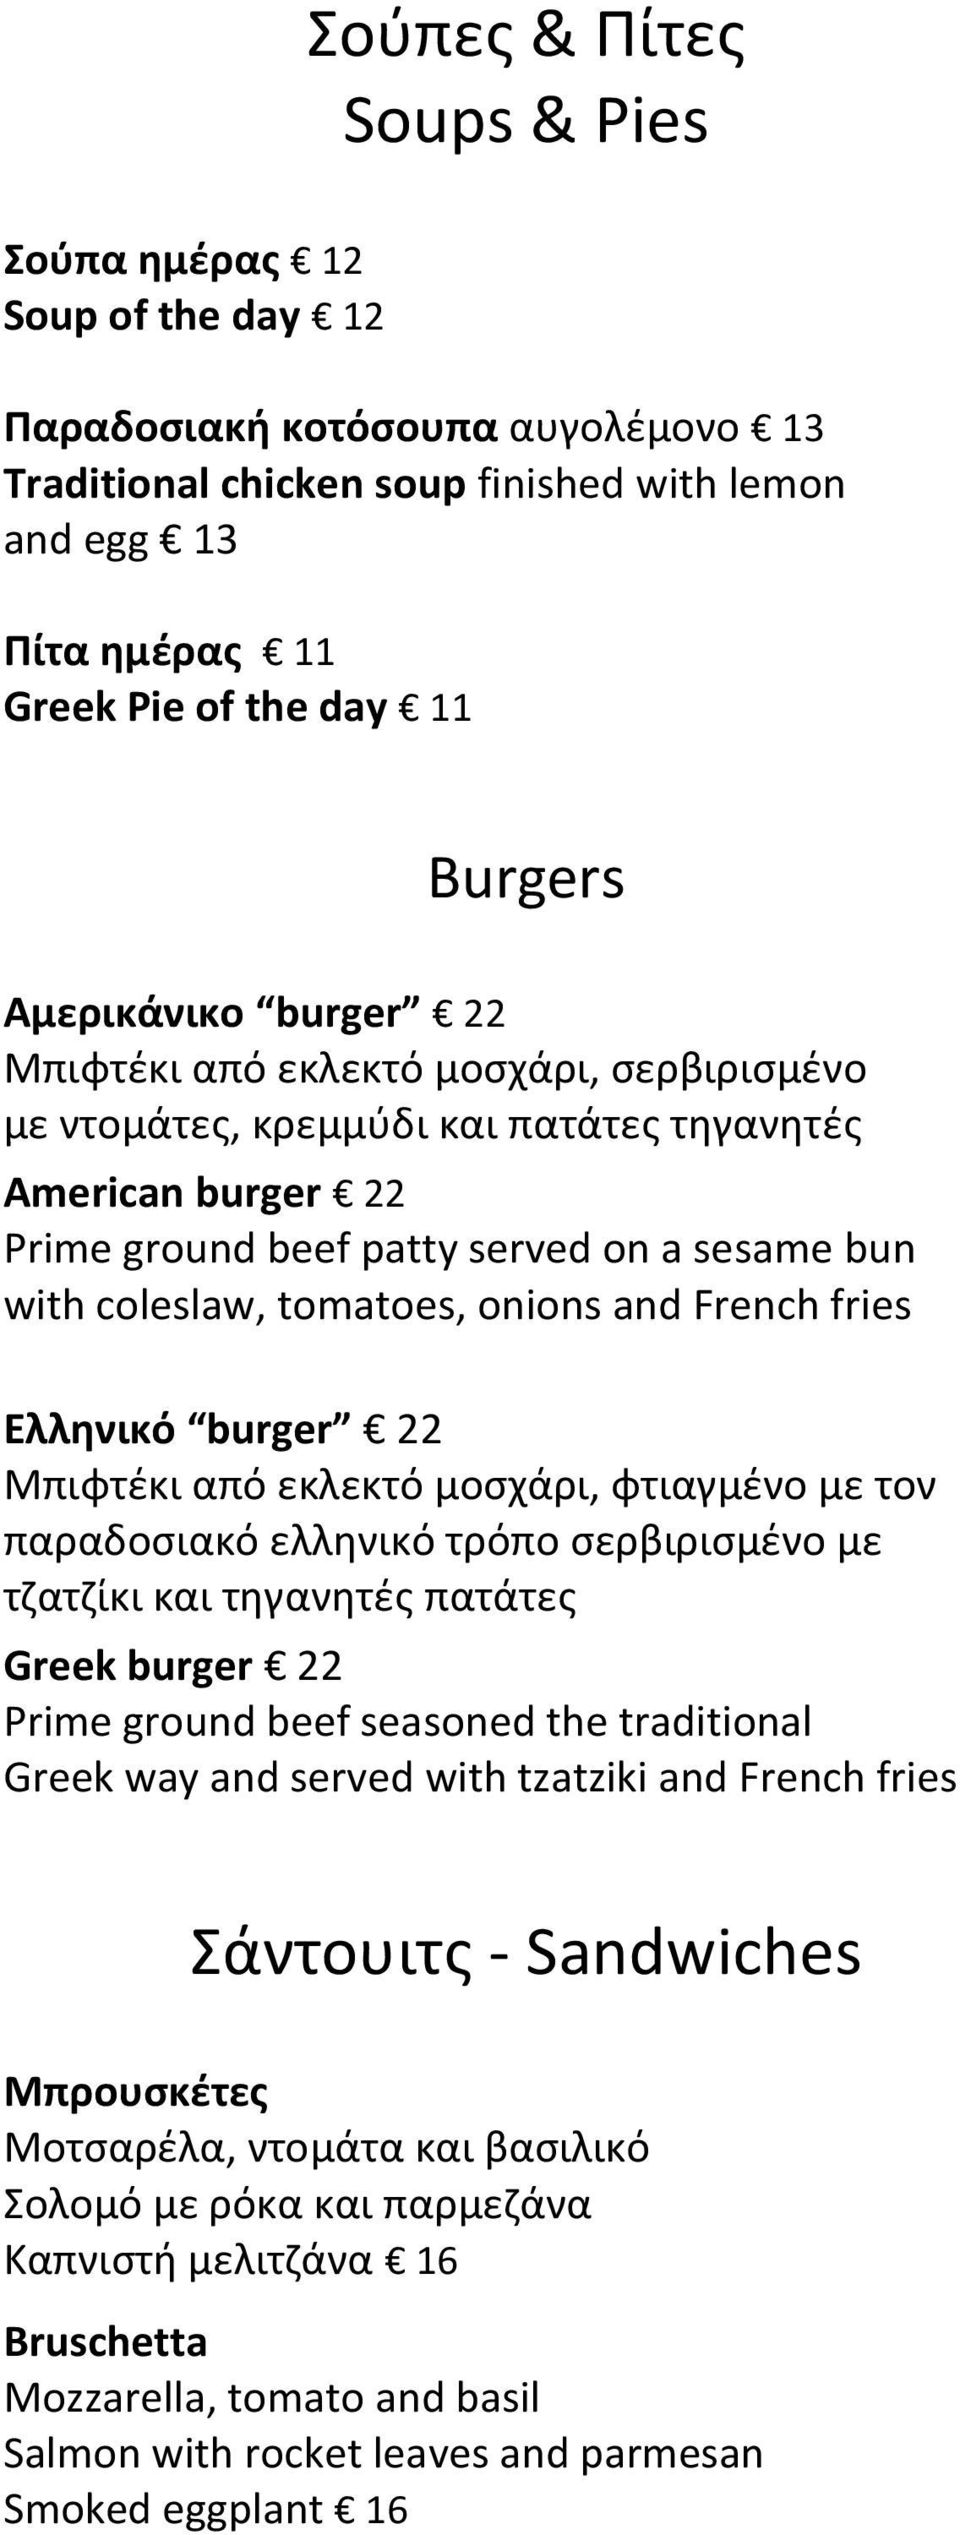 tomatoes, onions and French fries Ελληνικό burger 22 Μπιφτέκι από εκλεκτό μοσχάρι, φτιαγμένο με τον παραδοσιακό ελληνικό τρόπο σερβιρισμένο με τζατζίκι και τηγανητές πατάτες Greek burger 22 Prime